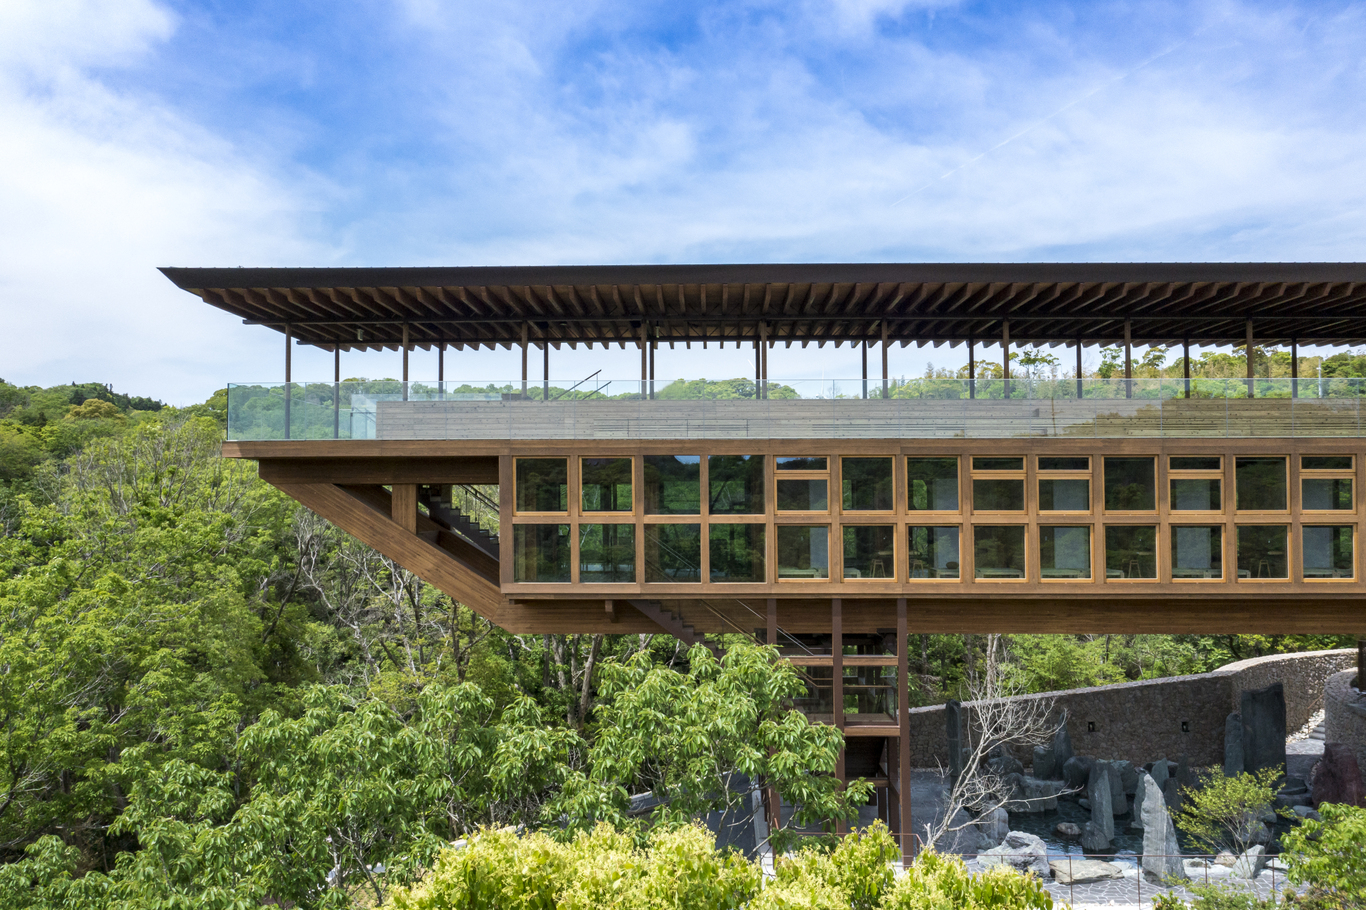 整个禅坊靖宁以两个固定基座和悬 臂式设计，营造出在自然中寻求平衡的建筑意象。